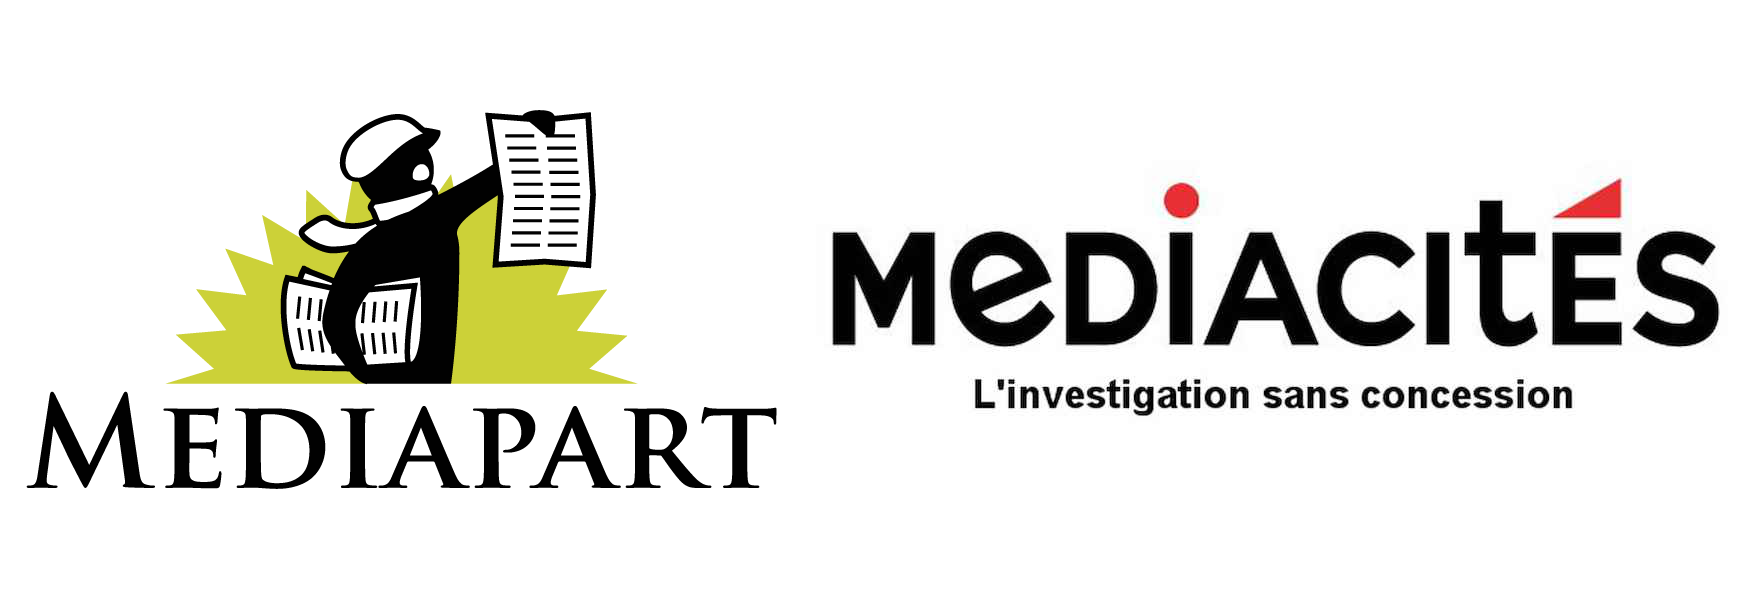 Logo Mediapart et Médiacitées